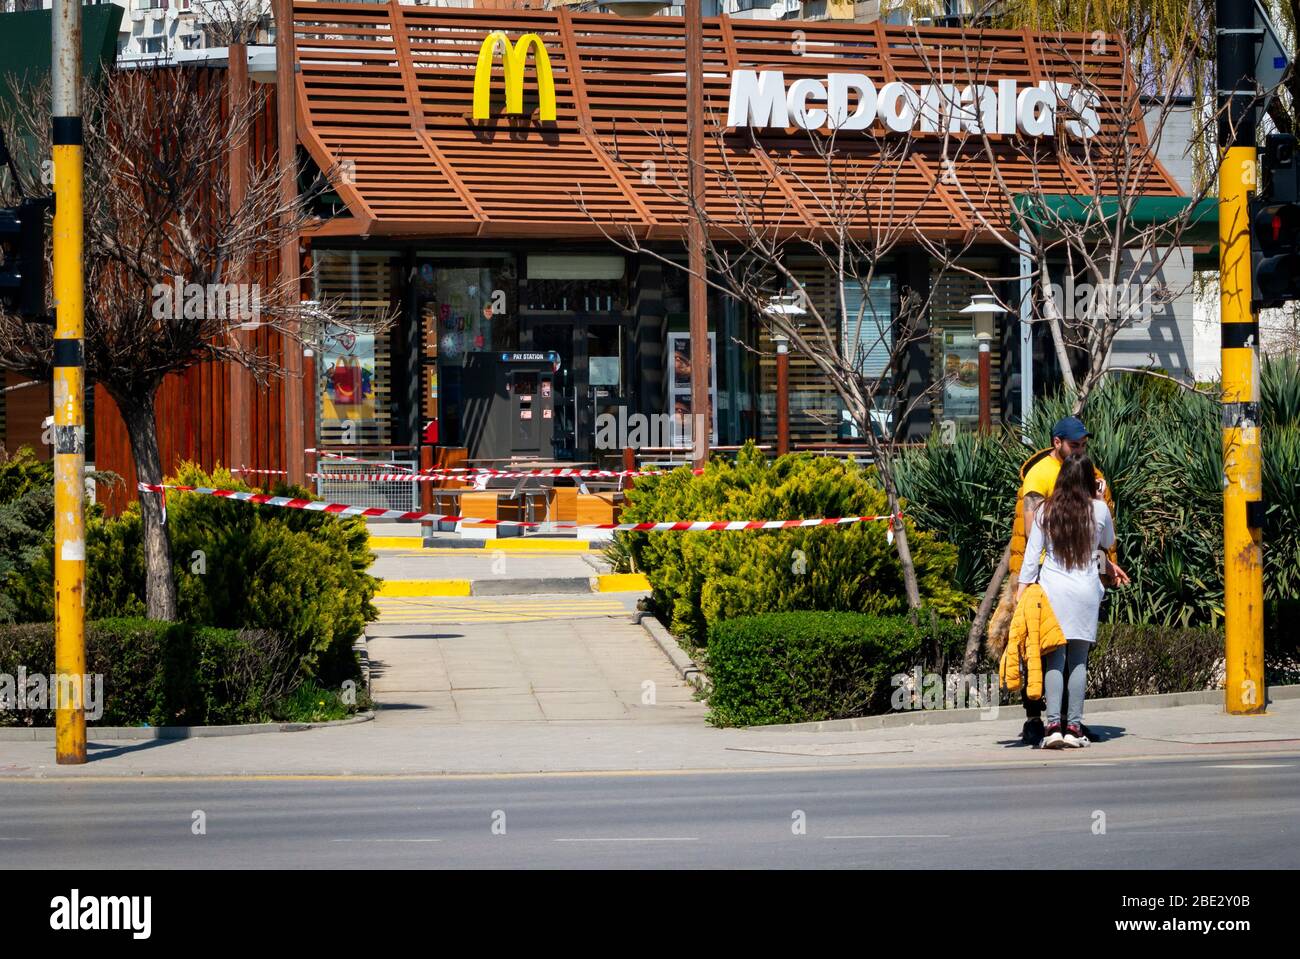 Menschen, die für normale Geschäfte vor dem geschlossen stehen McDonald's Fast Food Restaurant erlaubt nur Drive-in oder Drive-Thru Essen wegen der Ausbreitung der Coronavirus Pandemie von Covid-19 in Sofia, Bulgarien im Jahr 2020 Stockfoto